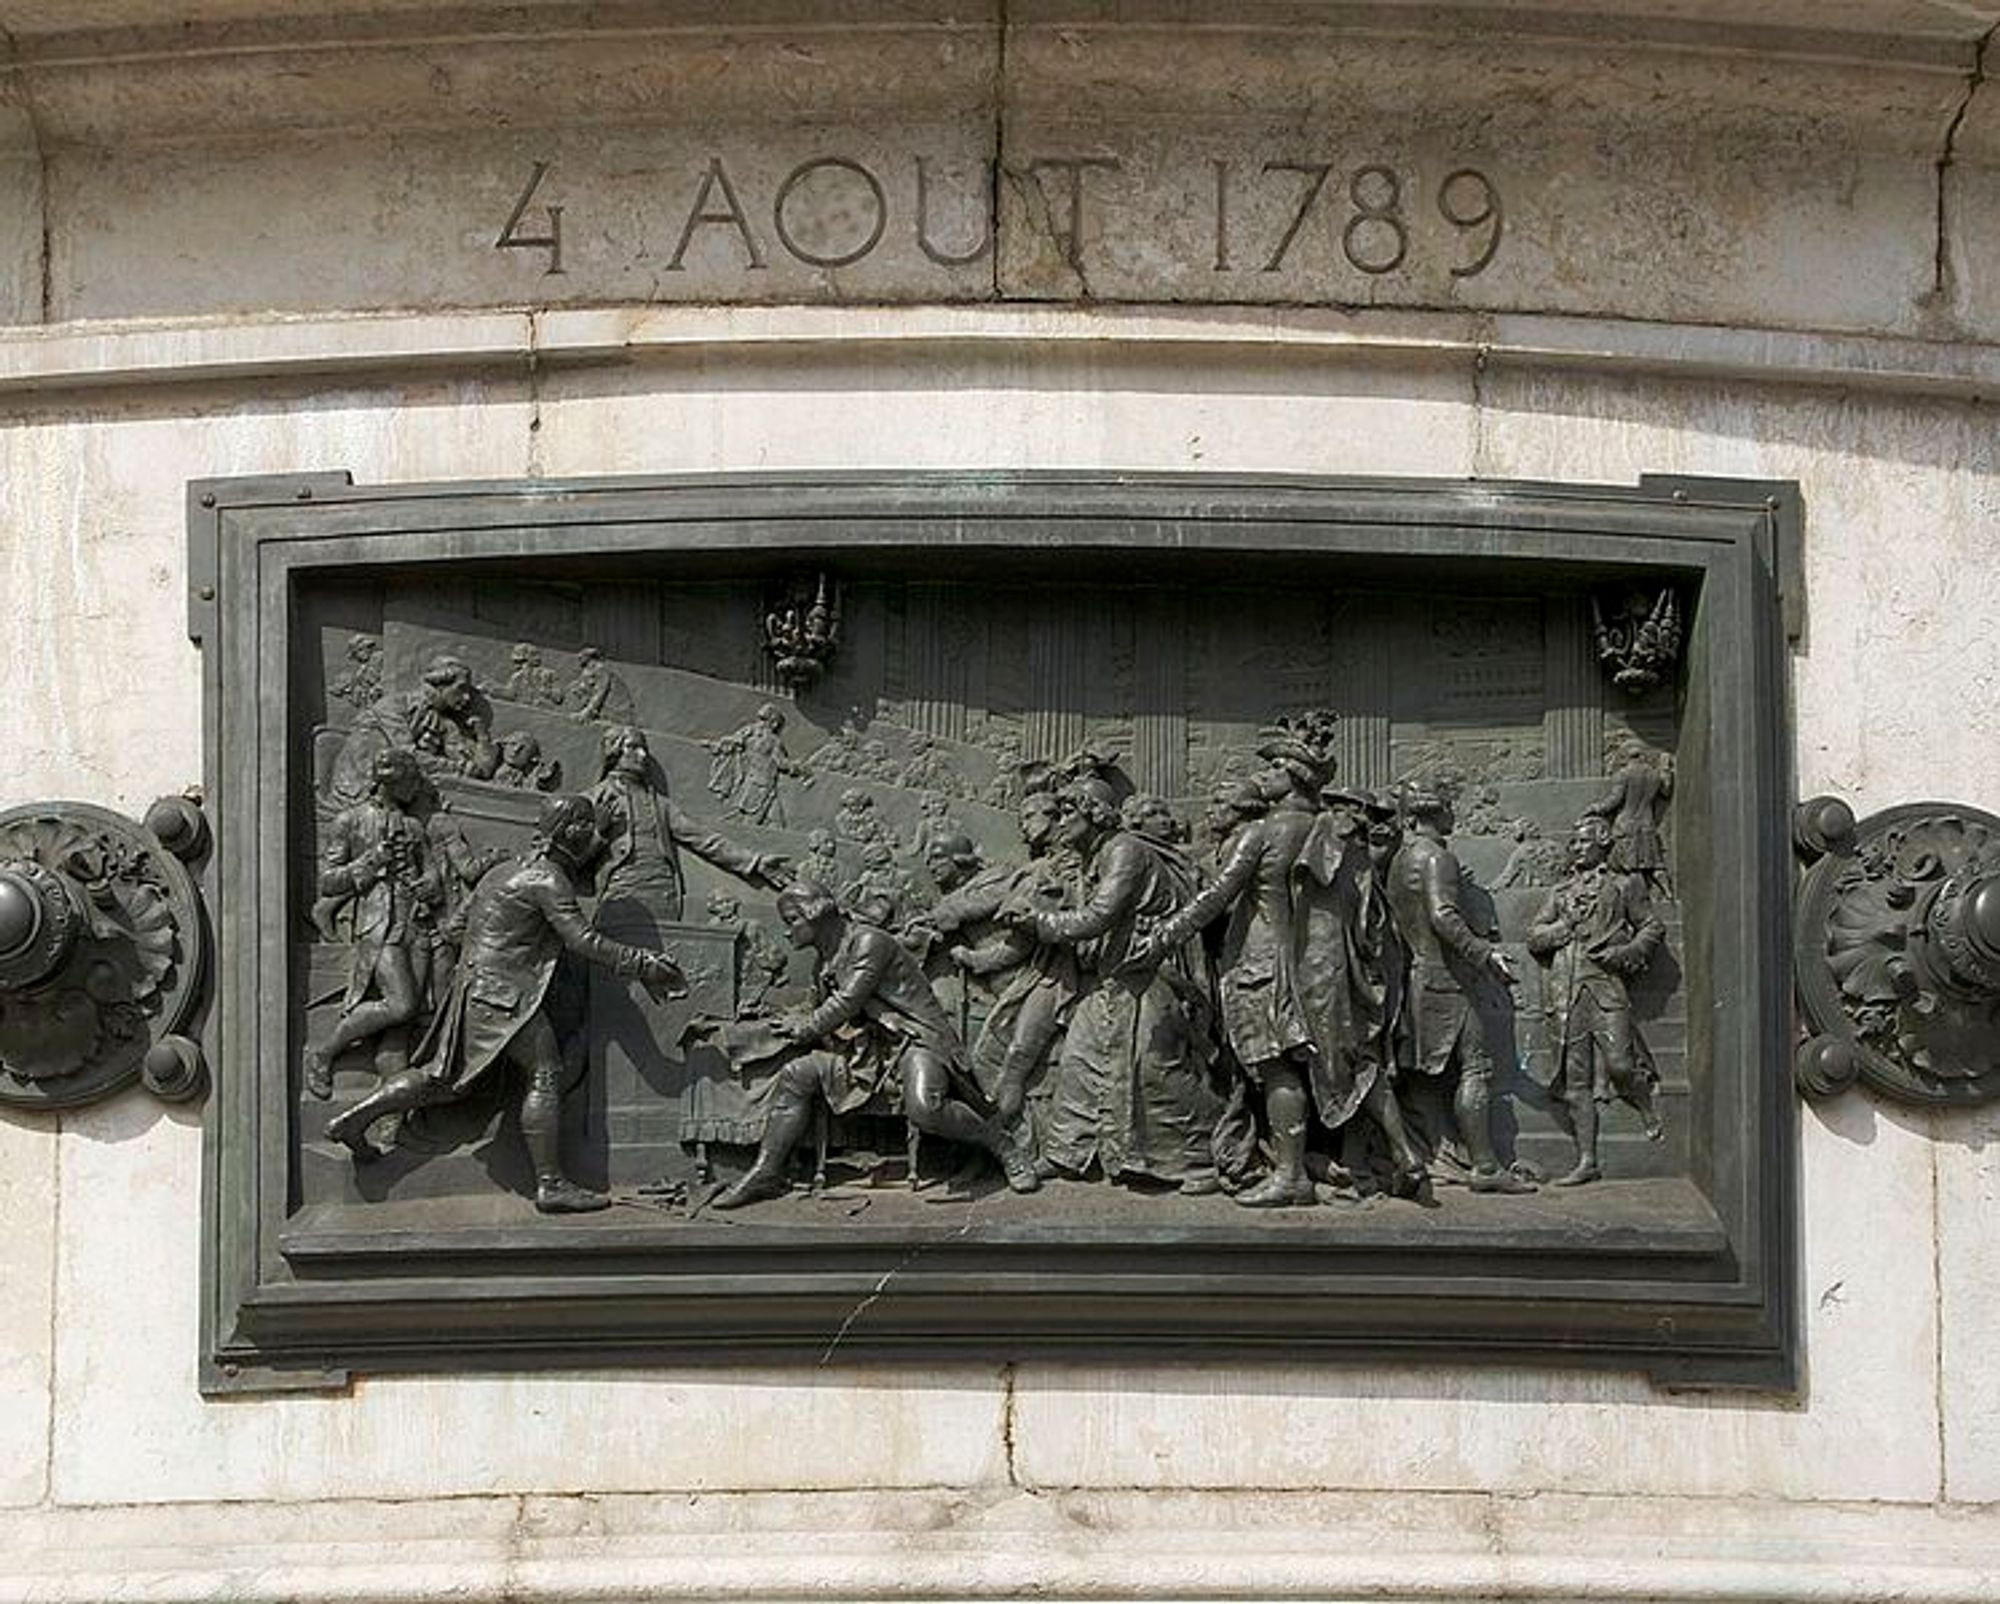 Барельеф на памятнике Республики (Monument à la République), расположенном на площади Республики в Париже. На нем изображены события Ночи 4 августа 1798 года.